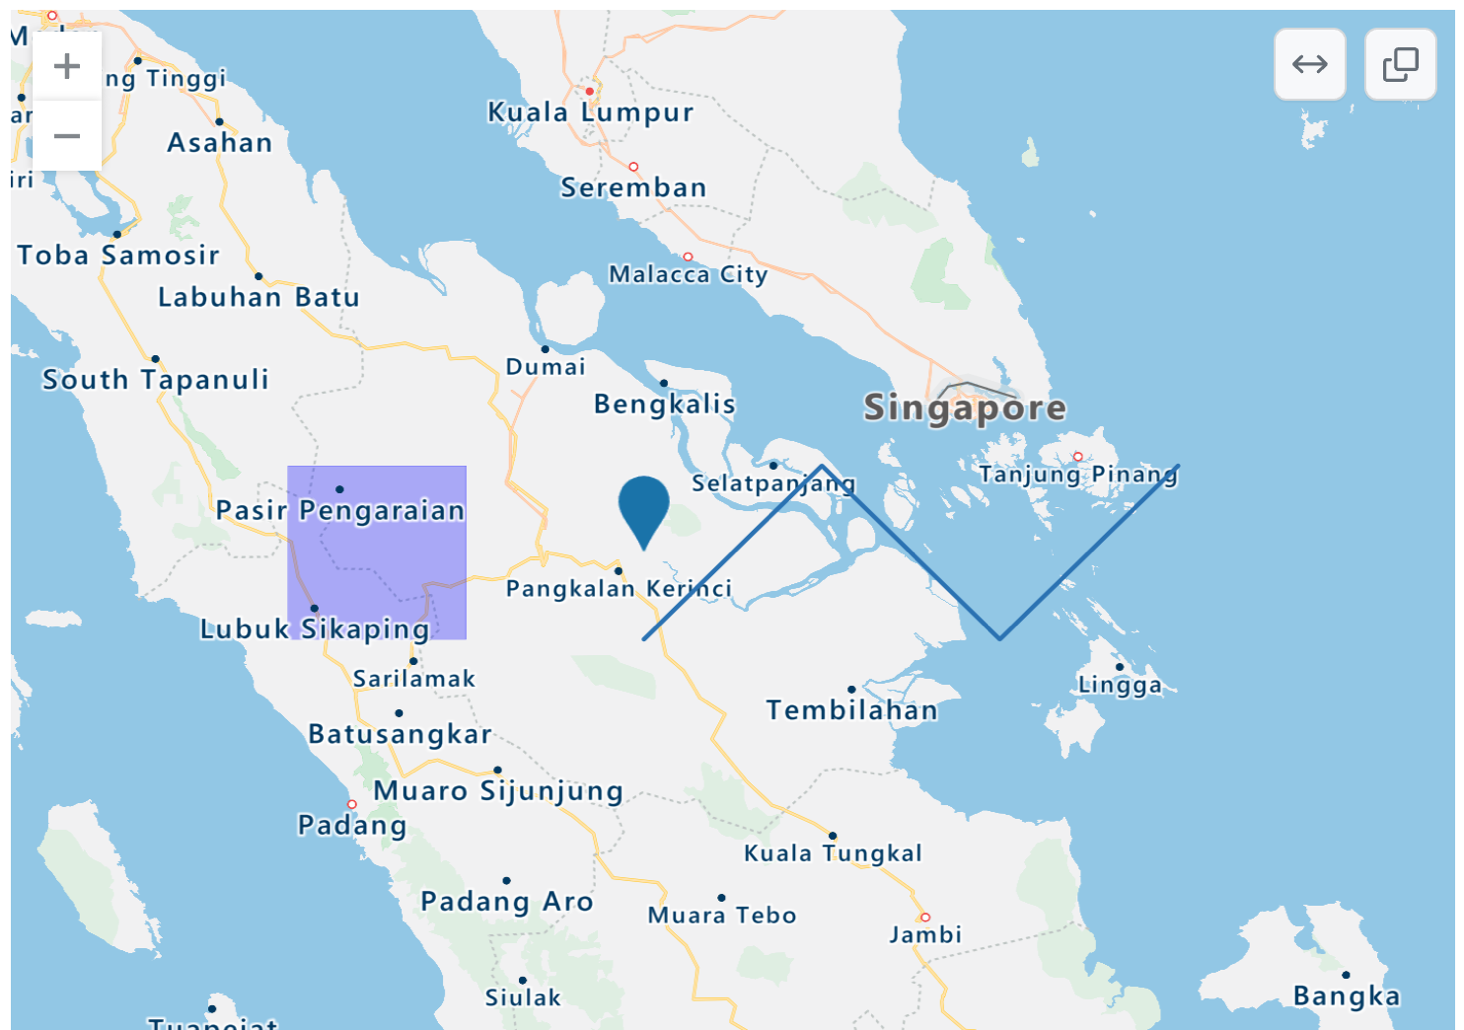 파란색 점, 보라색 직사각형 오버레이, 파란색 지그재그 선이 있는 인도네시아, 싱가포르, 말레이시아 일부 지역의 렌더링된 TopoJSON 지도 스크린샷.